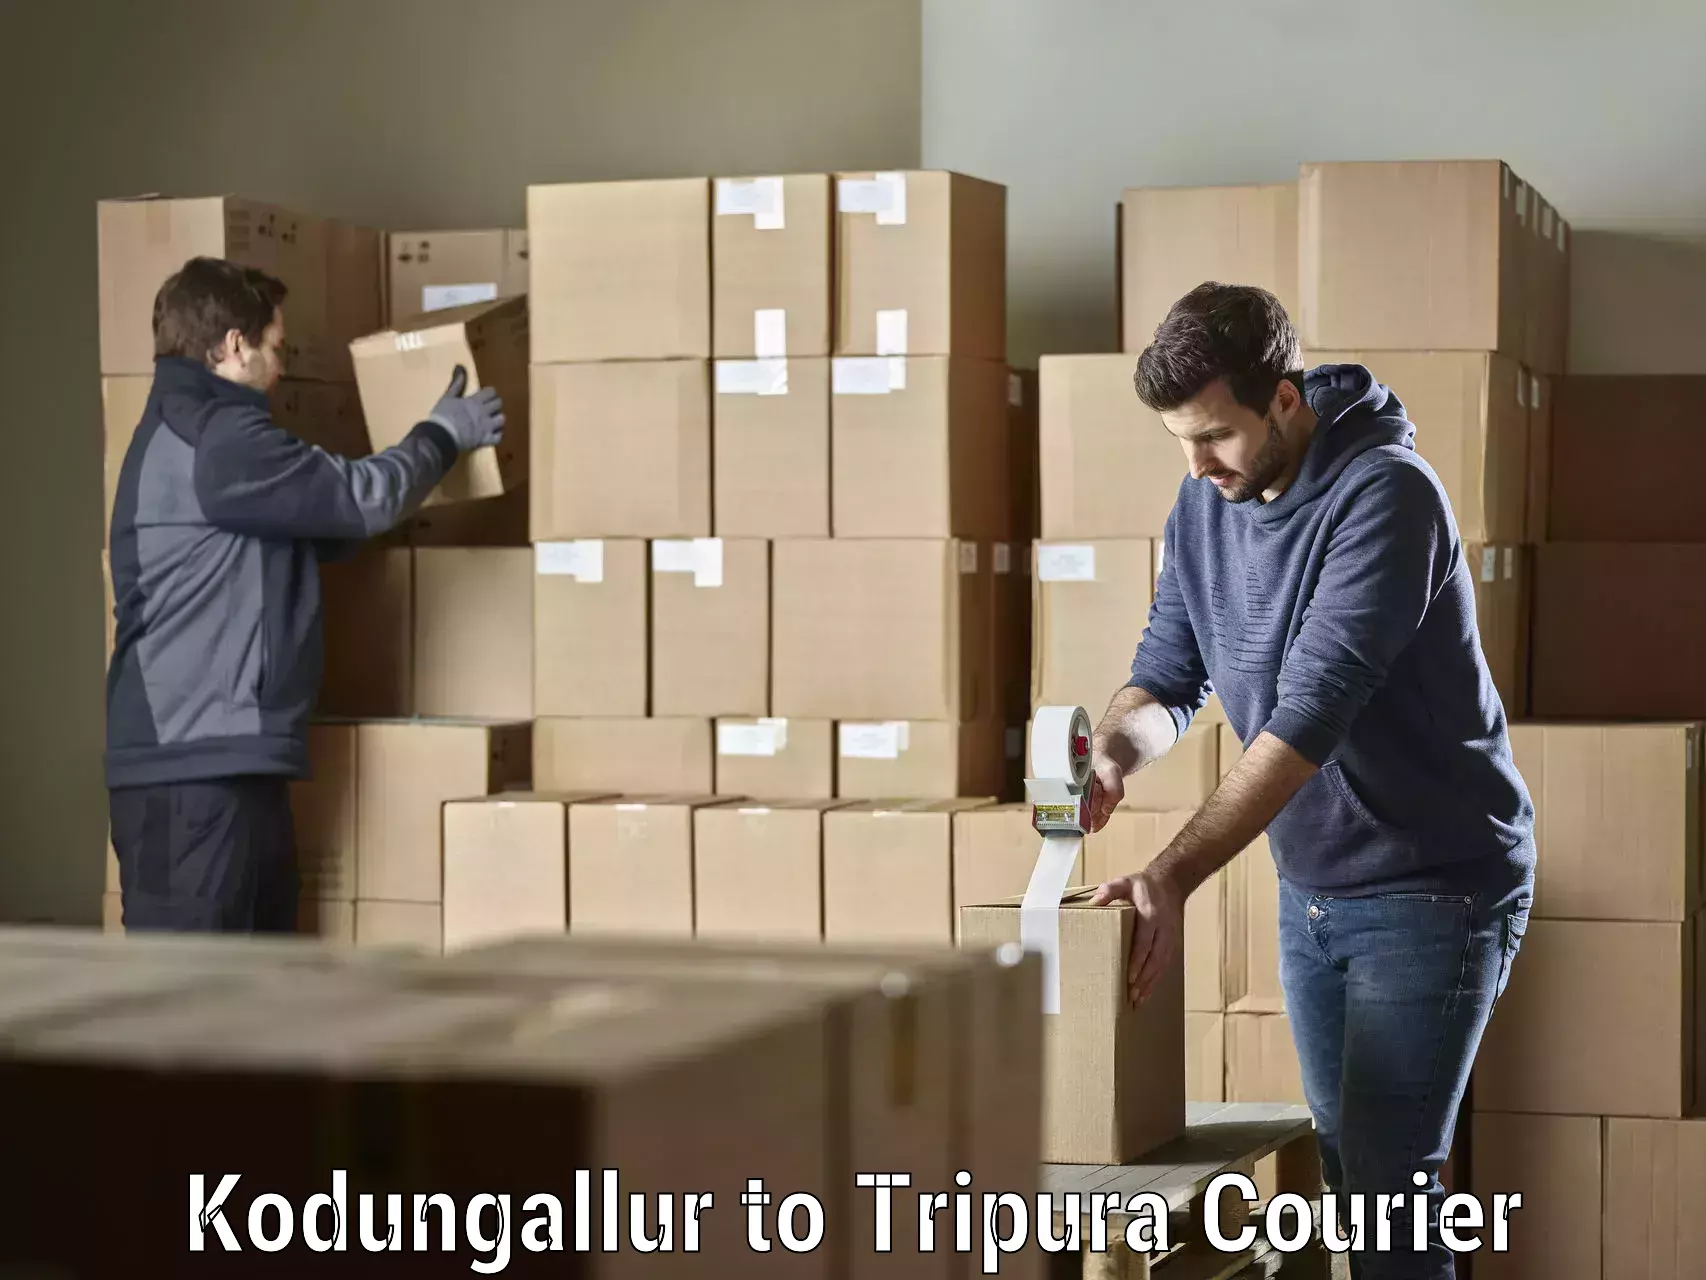 User-friendly courier app Kodungallur to Radhakishorepur